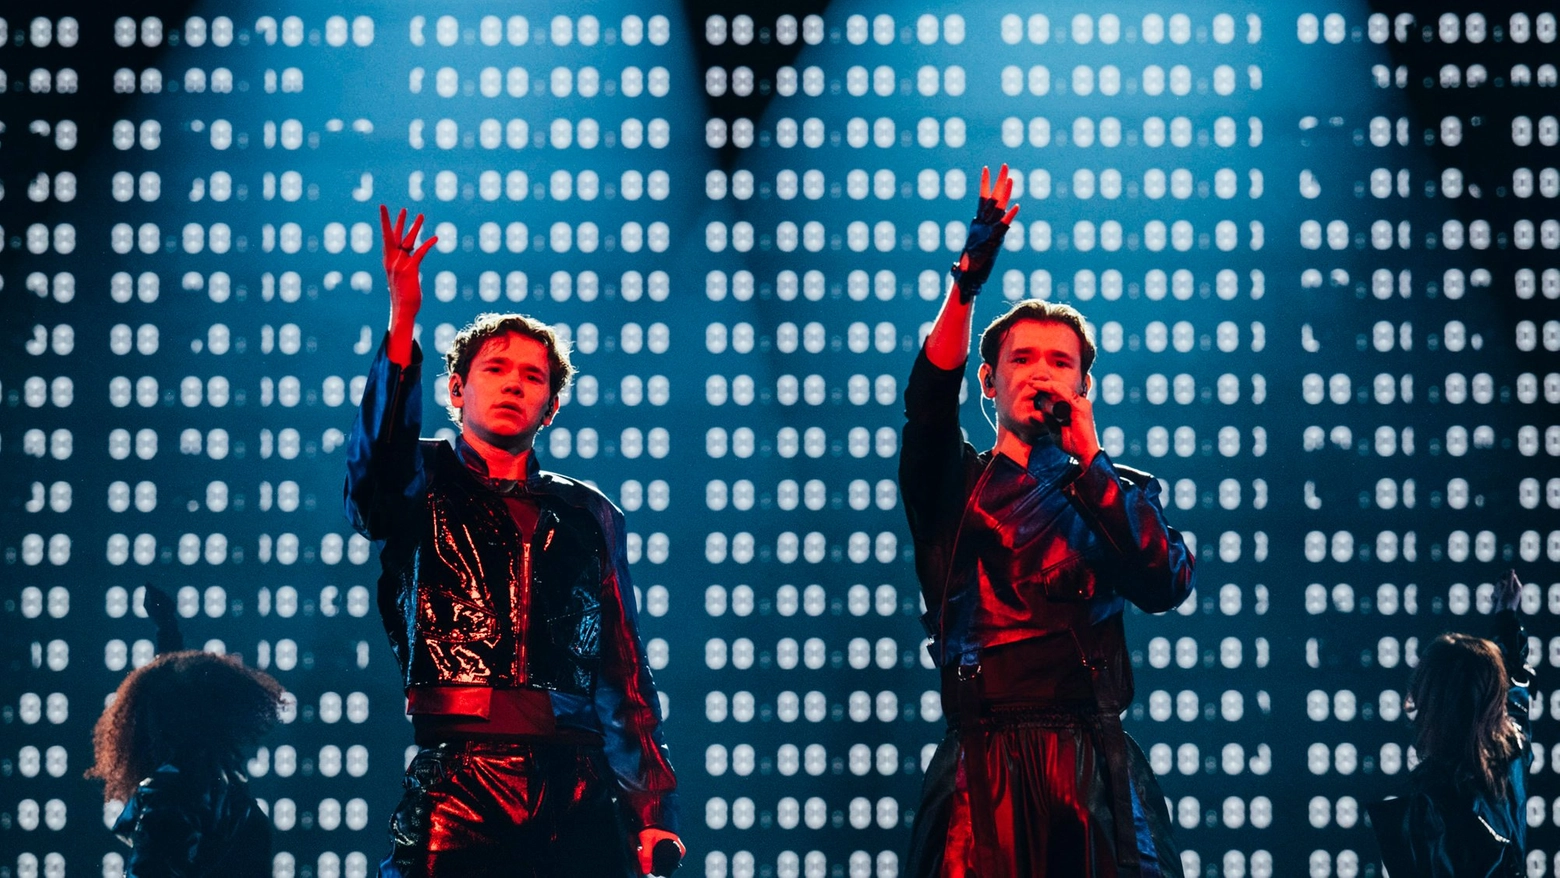 I fratelli Gunnarsen, di origini norvegesi, rappresentano la Svezia sul palco casalingo della Malmo Arena